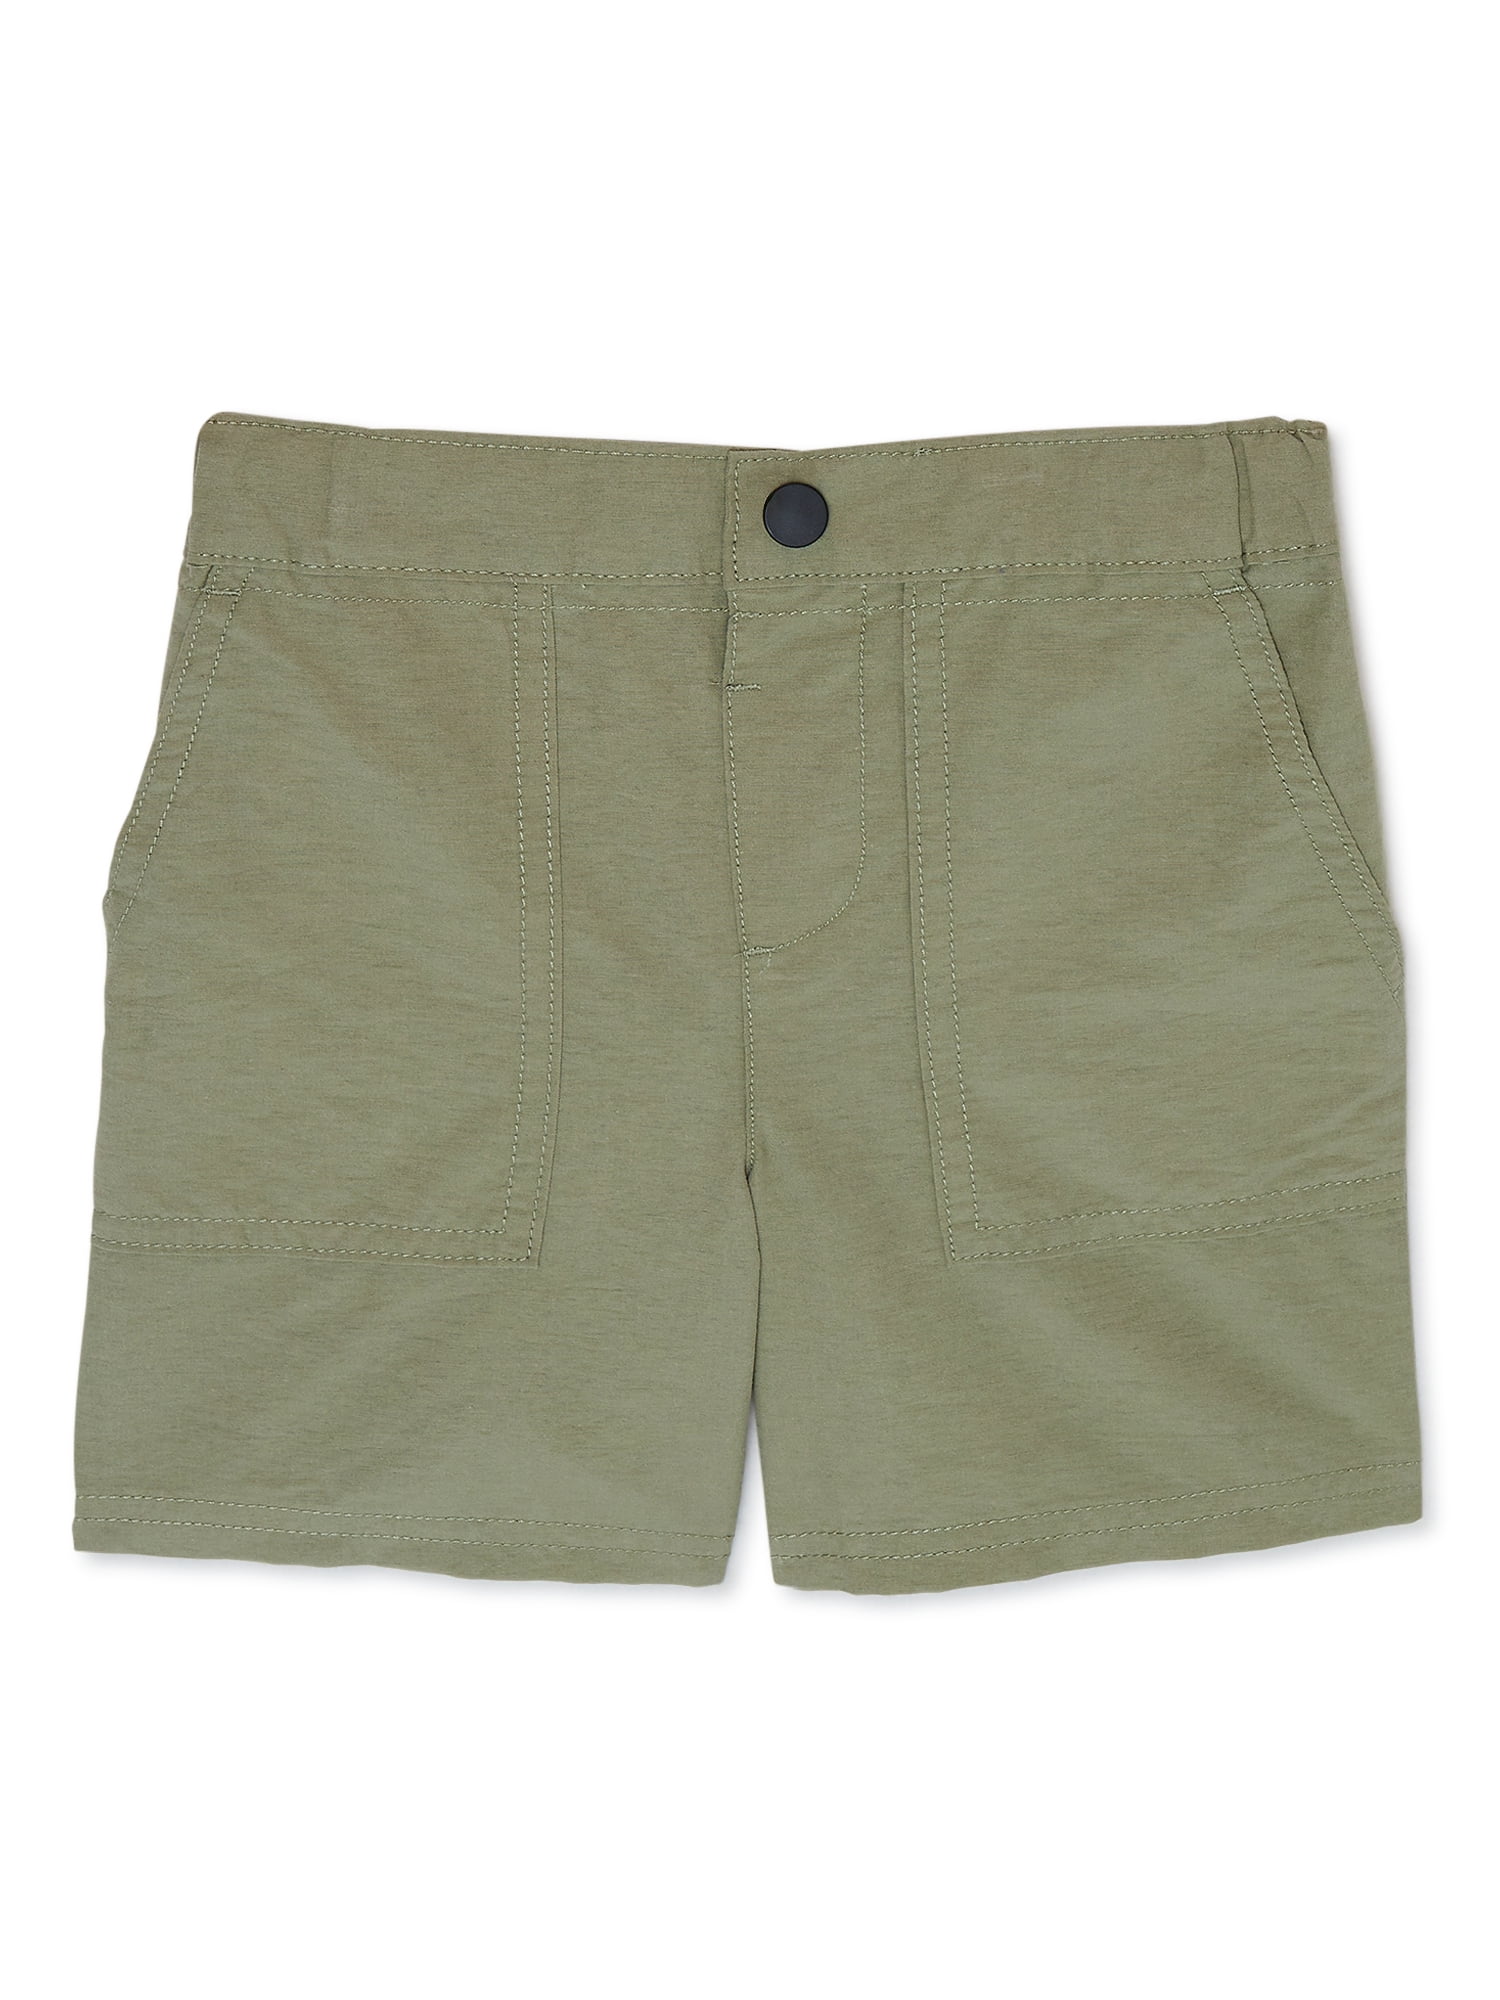 Garanimals Toddler Boy Tech Woven Shorts, Sizes 12M-5T - Walmart.com